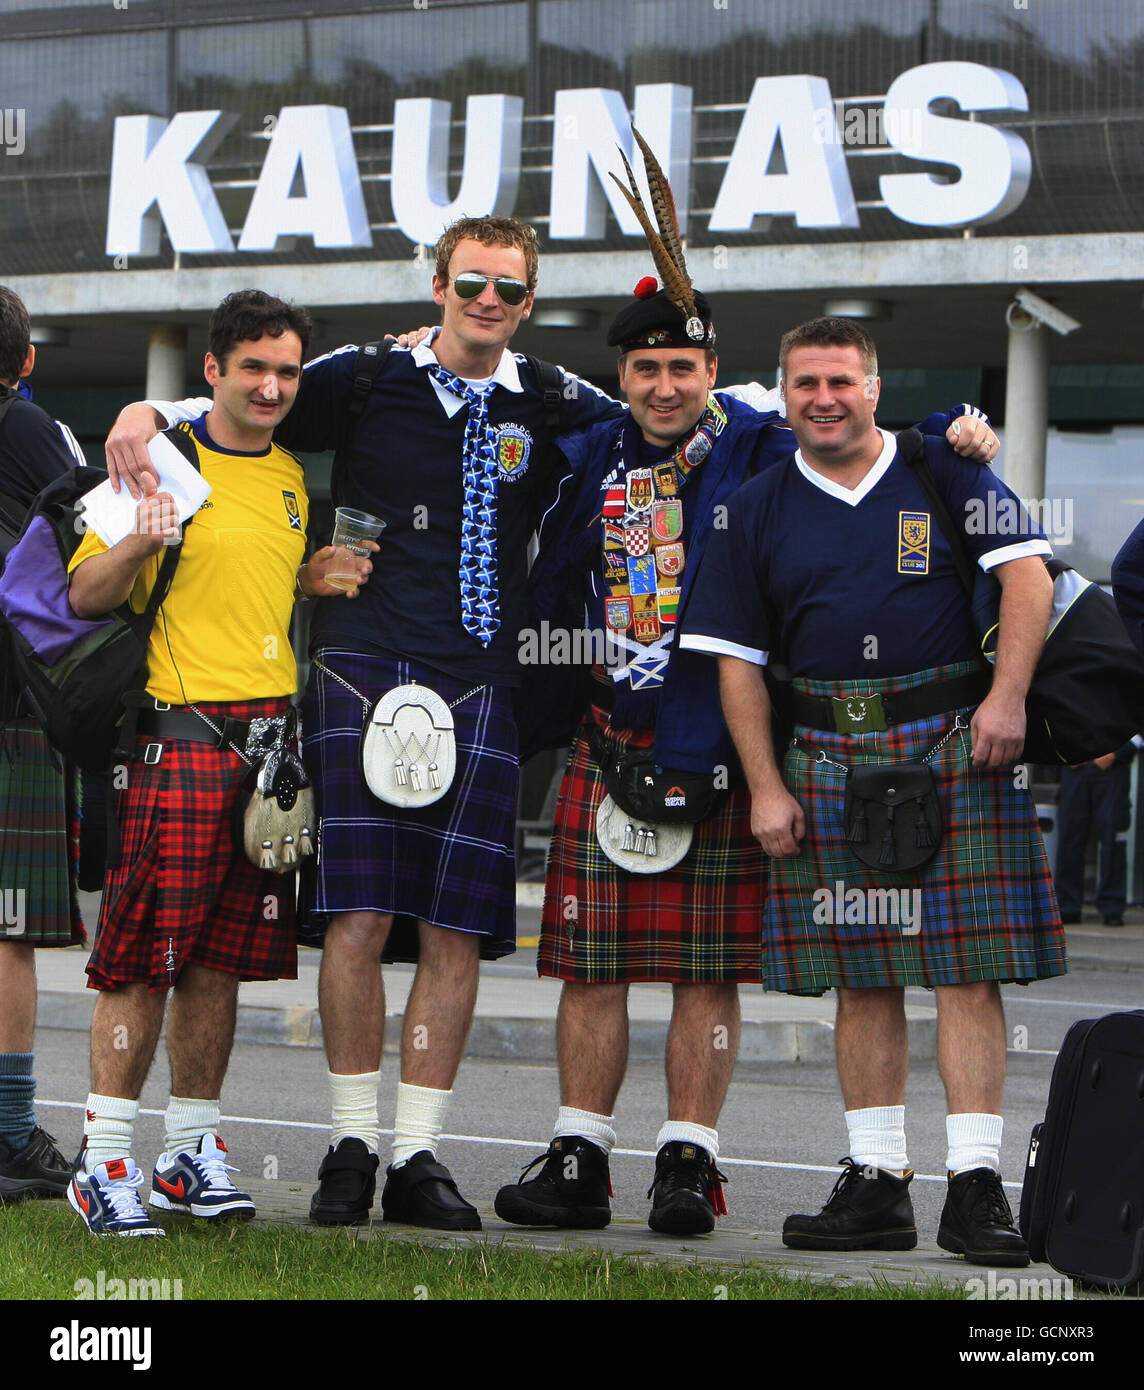 Los aficionados al fútbol de Escocia esperan un taxi fuera del aeropuerto de Kaunas antes del partido de clasificación del Campeonato Europeo de la UEFA en el estadio Darius Girenas, Kaunas. Foto de stock